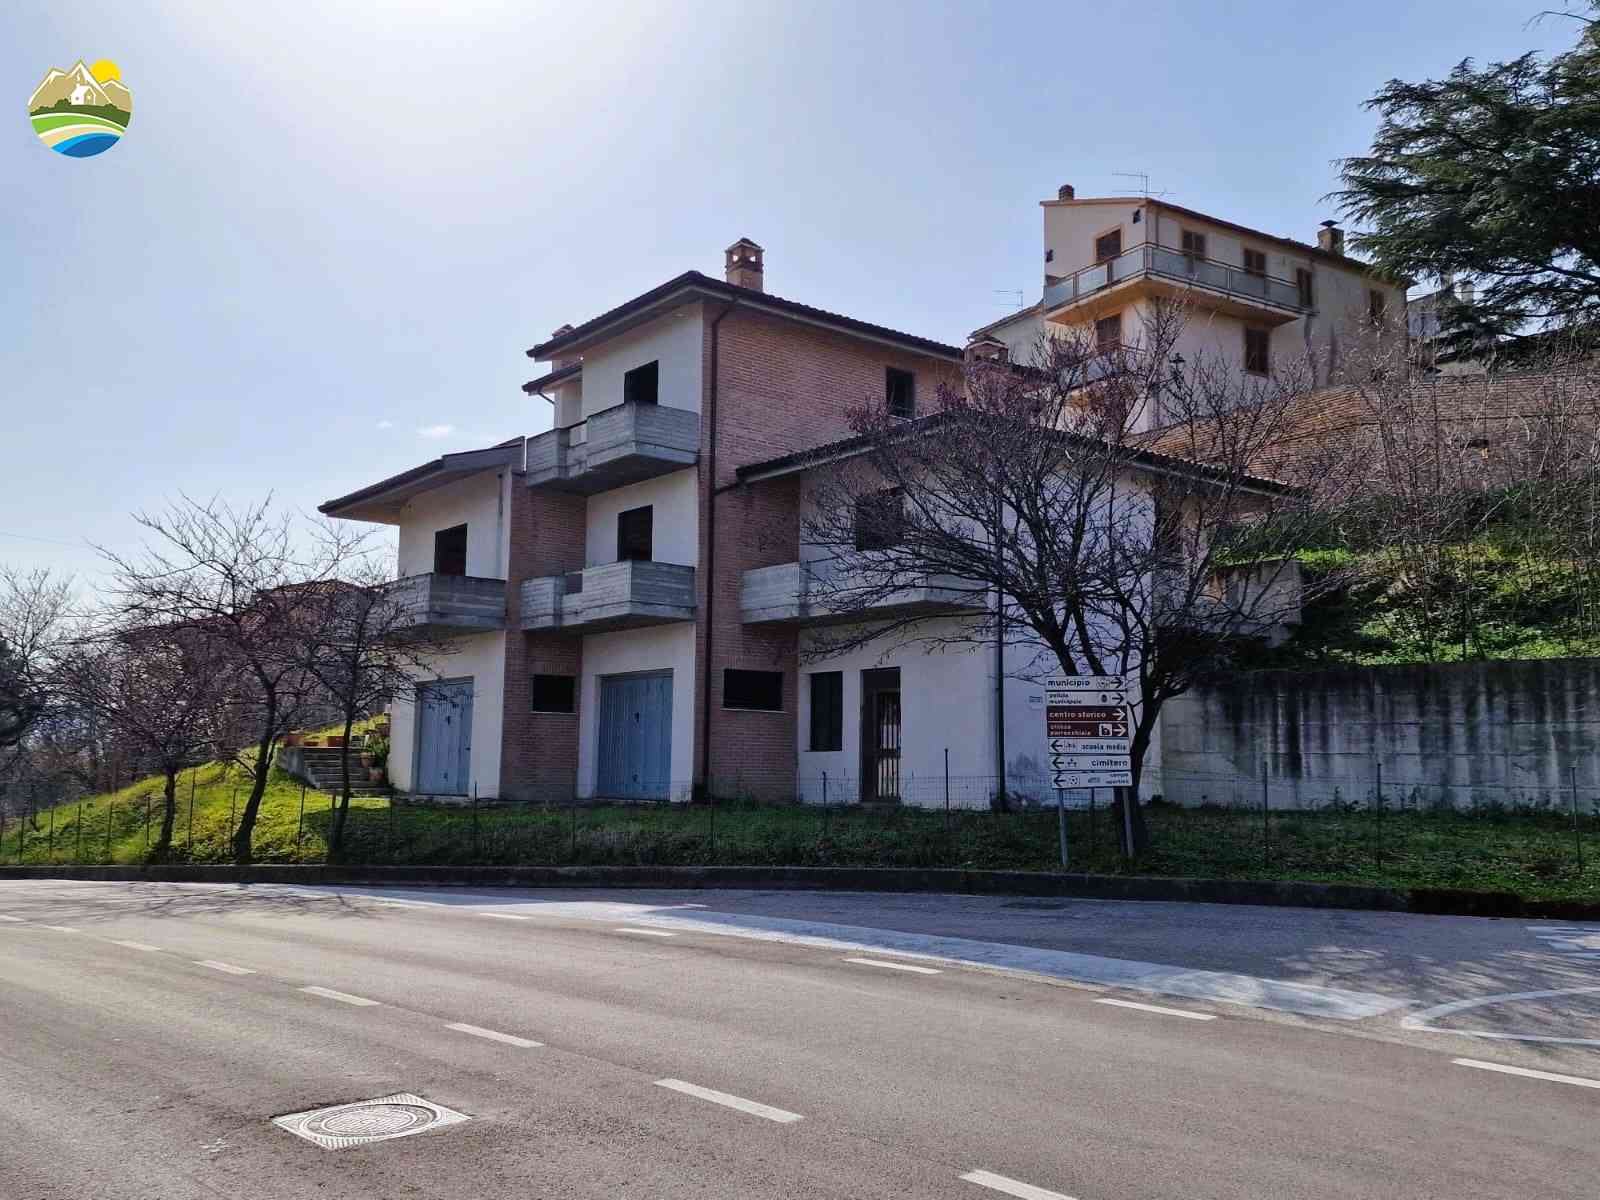 Villa Villa for sale Castilenti (TE), Villa Mandorlo - Castilenti - EUR 128.425 750